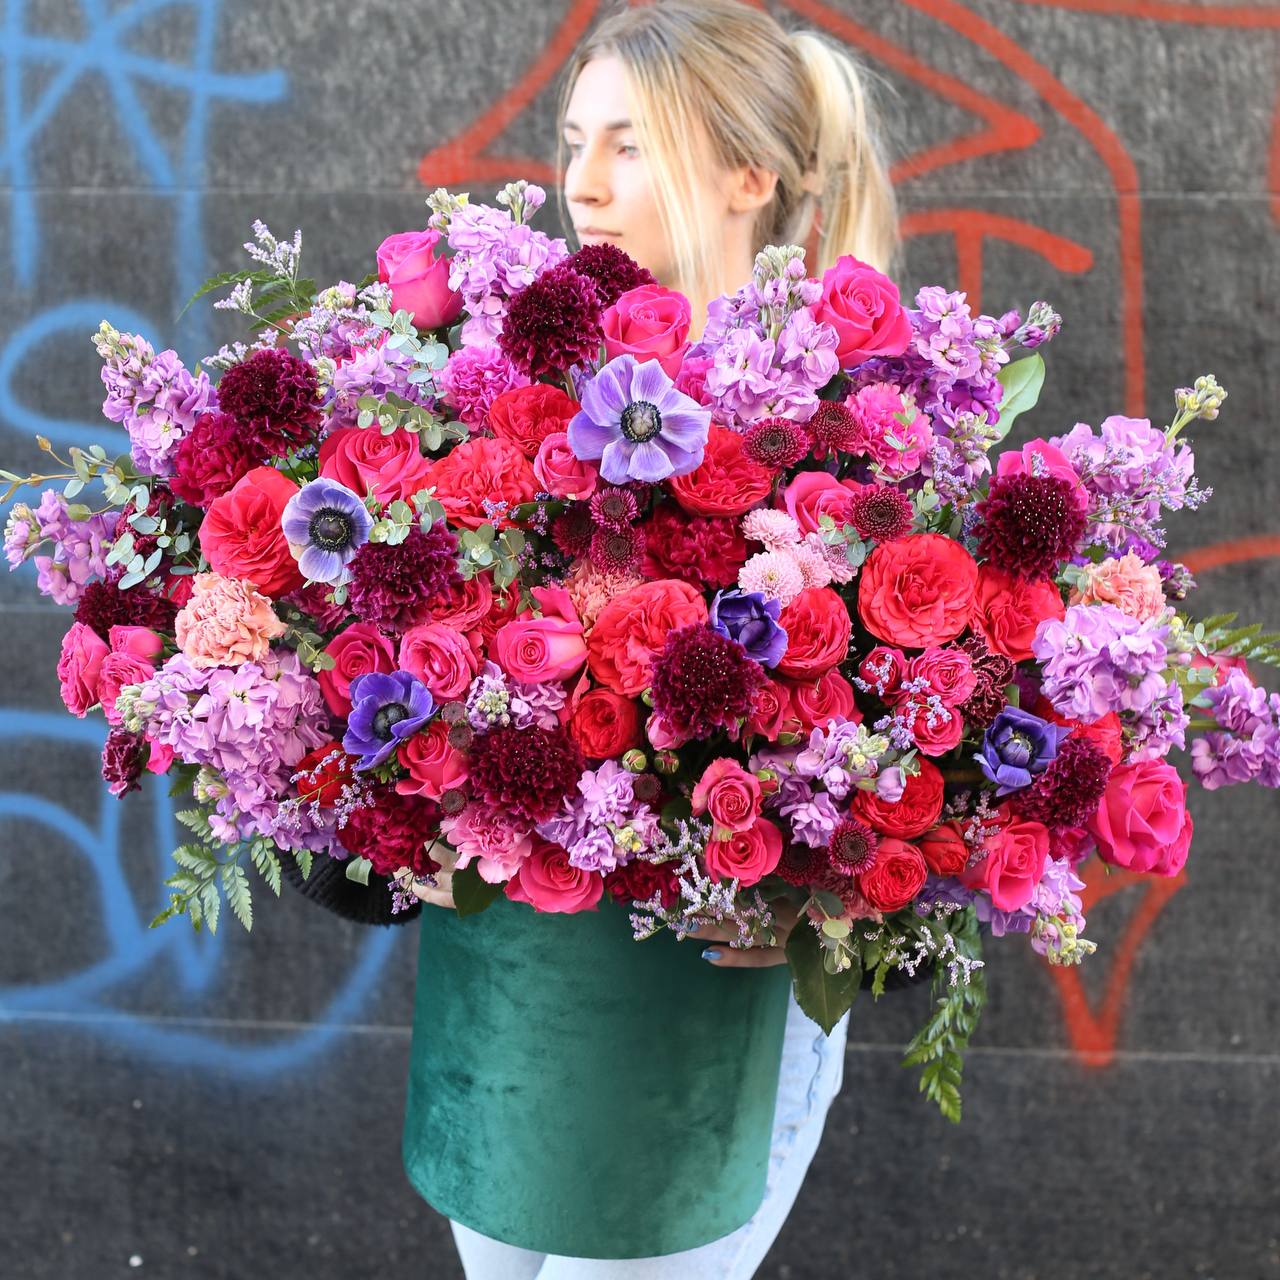 Valentines luxury flower arrangement